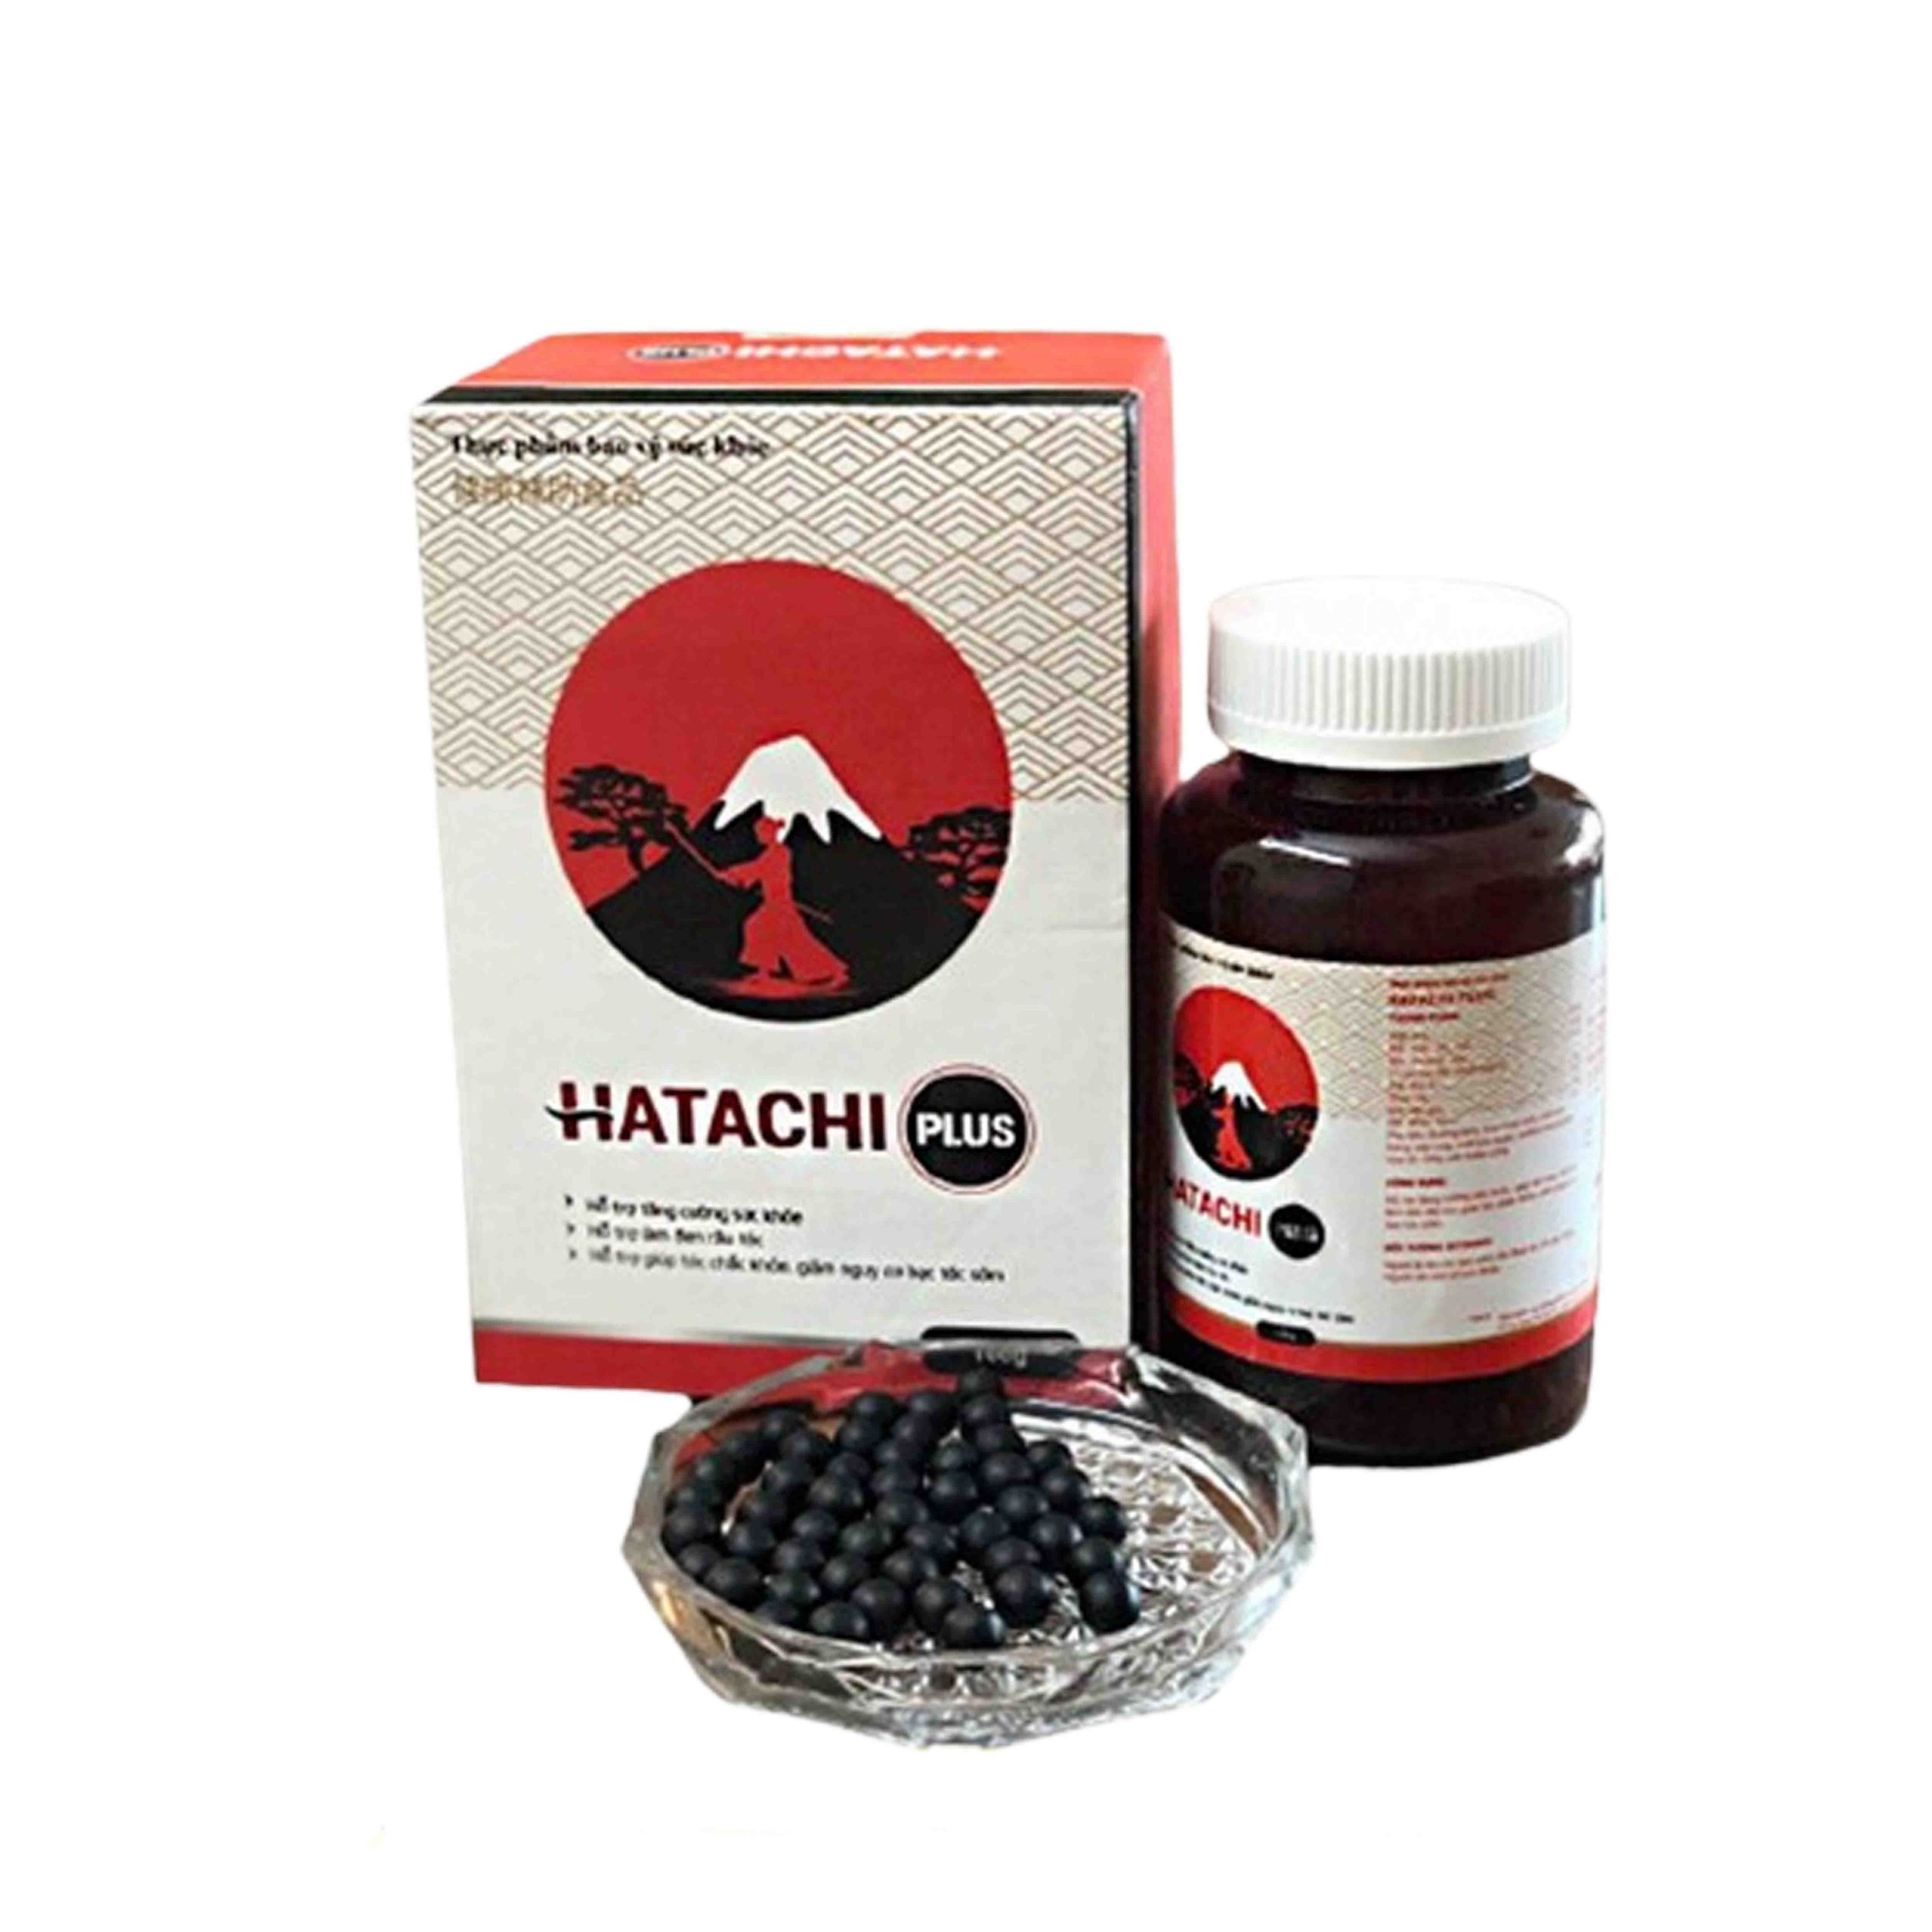 Viên Uống Hatachi Plus Giảm Bạc Tóc Hói Đầu (Lọ 100g)